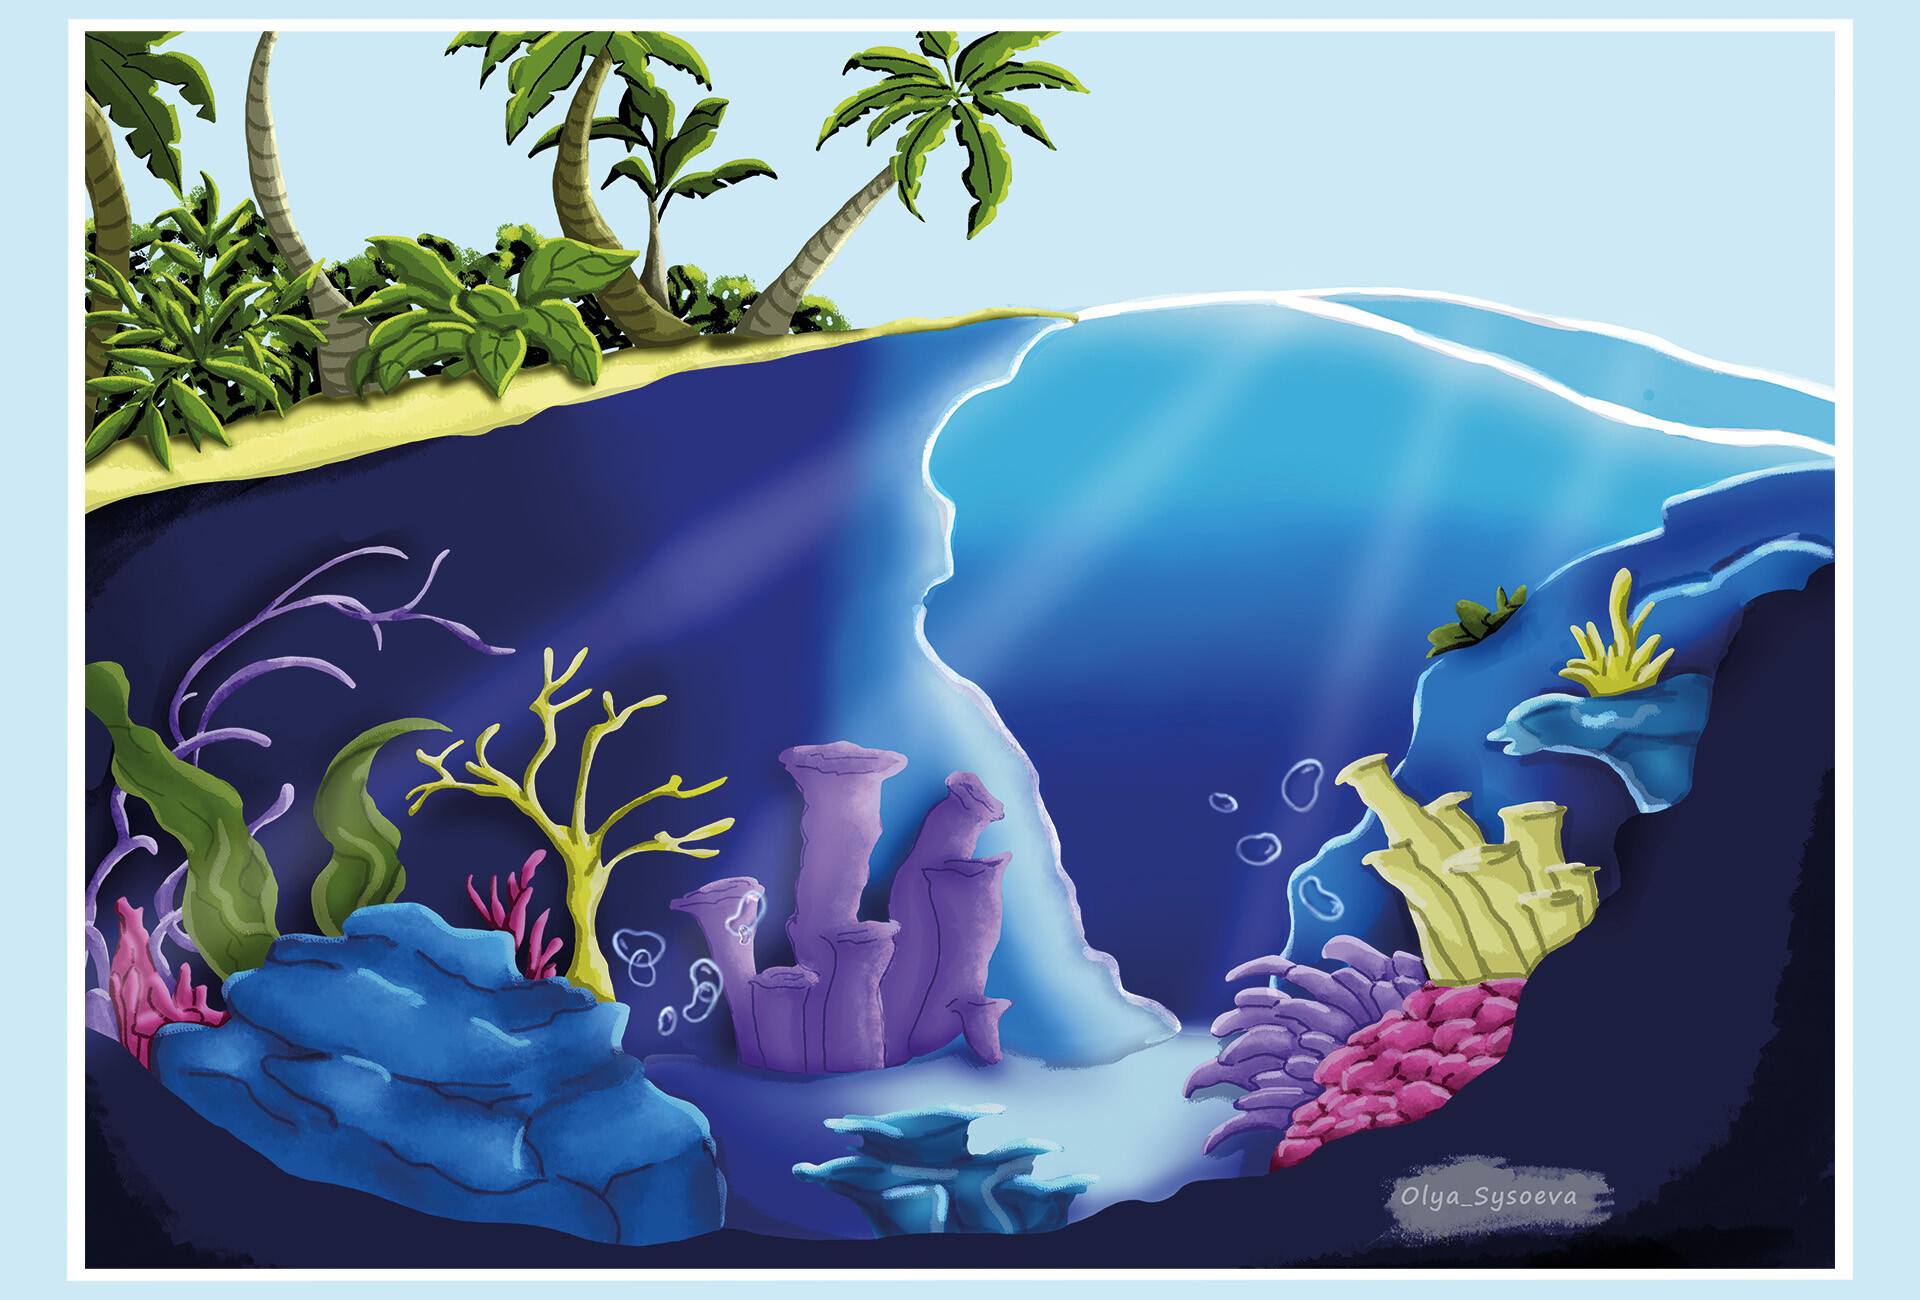 Trò chơi bảng dành cho trẻ em sẽ trở nên thú vị hơn với hình nền dưới đại dương đáng yêu, tạo cảm giác mát mẻ và sinh động. Những sinh vật biển tuyệt đẹp sẽ kích thích trí tưởng tượng của bé, giúp họ khám phá thế giới dưới đại dương thật vui vẻ và thú vị.